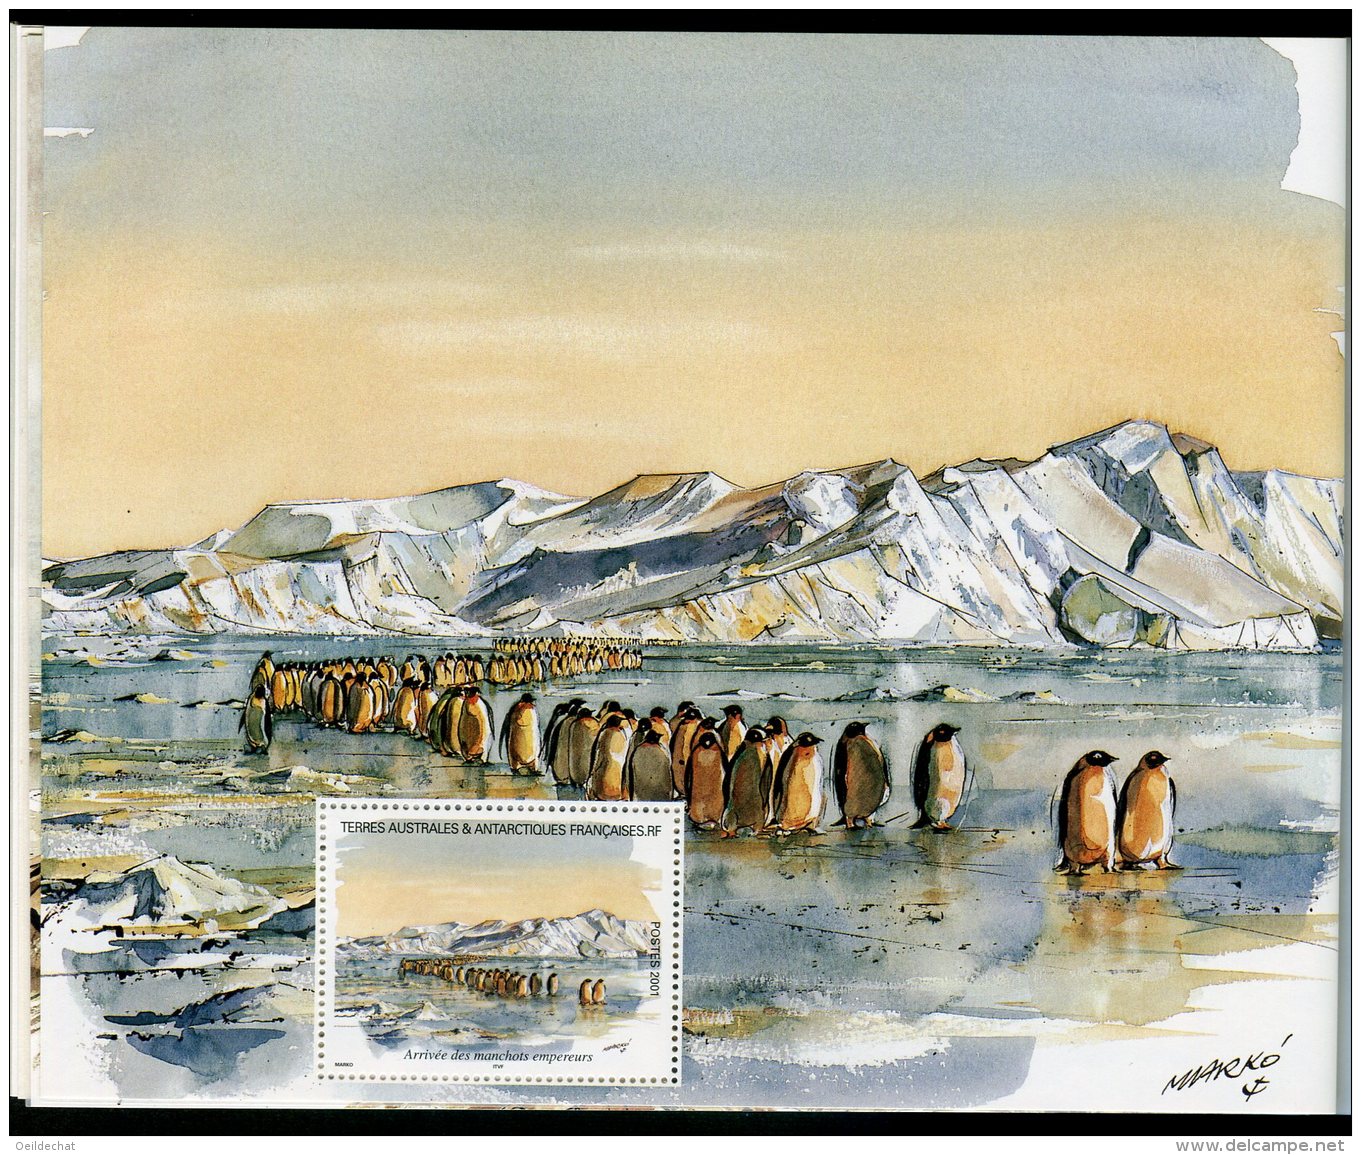 7574  Terres Australes et Antarctiques Françaises  carnet de voyage   C 308  (n°308/21)    2001      SUPERBE